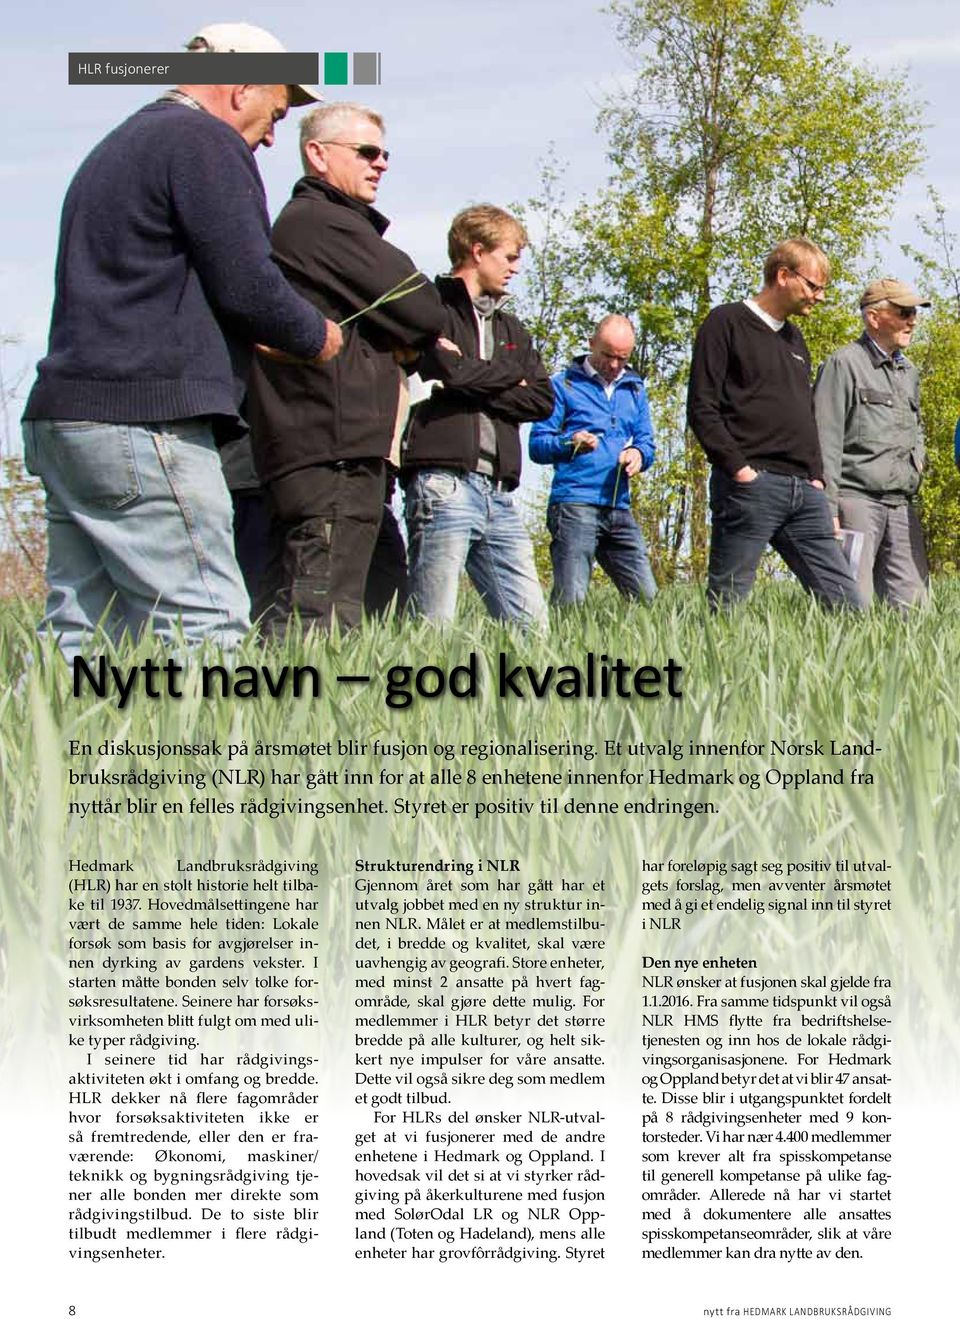 Hedmark Landbruksrådgiving (HLR) har en stolt historie helt tilbake til 1937. Hovedmålsettingene har vært de samme hele tiden: Lokale forsøk som basis for avgjørelser innen dyrking av gardens vekster.